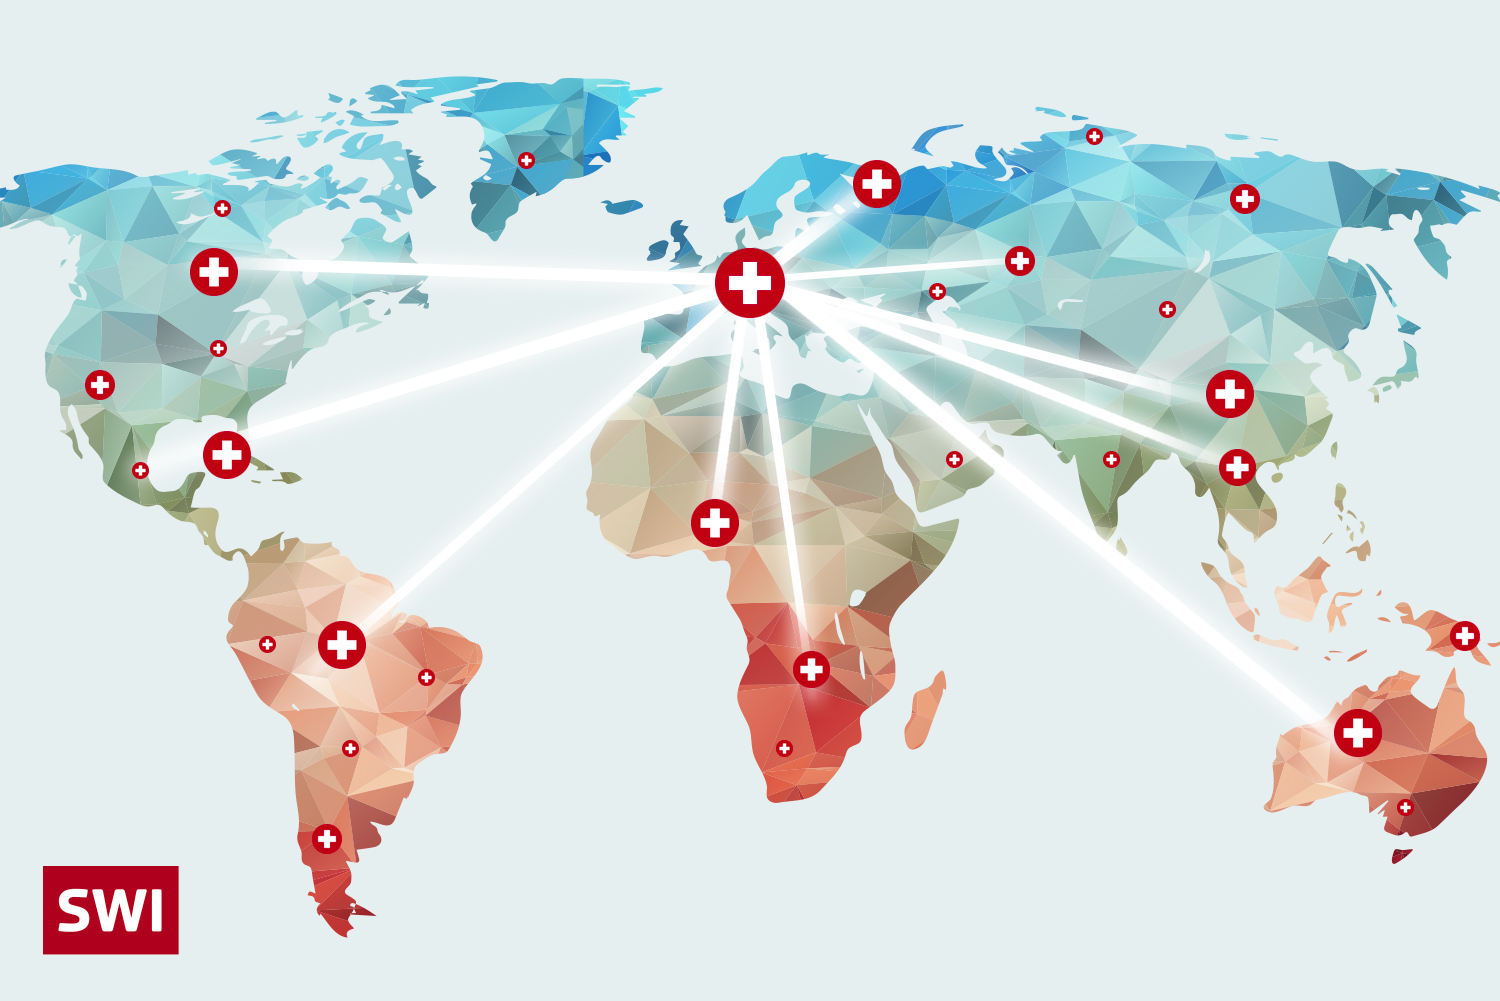 Weltkarte mit der Schweiz im Zentrum und mit vielen weissen Strahlen viele klein Schweizen auf der ganzen Welt verteilt